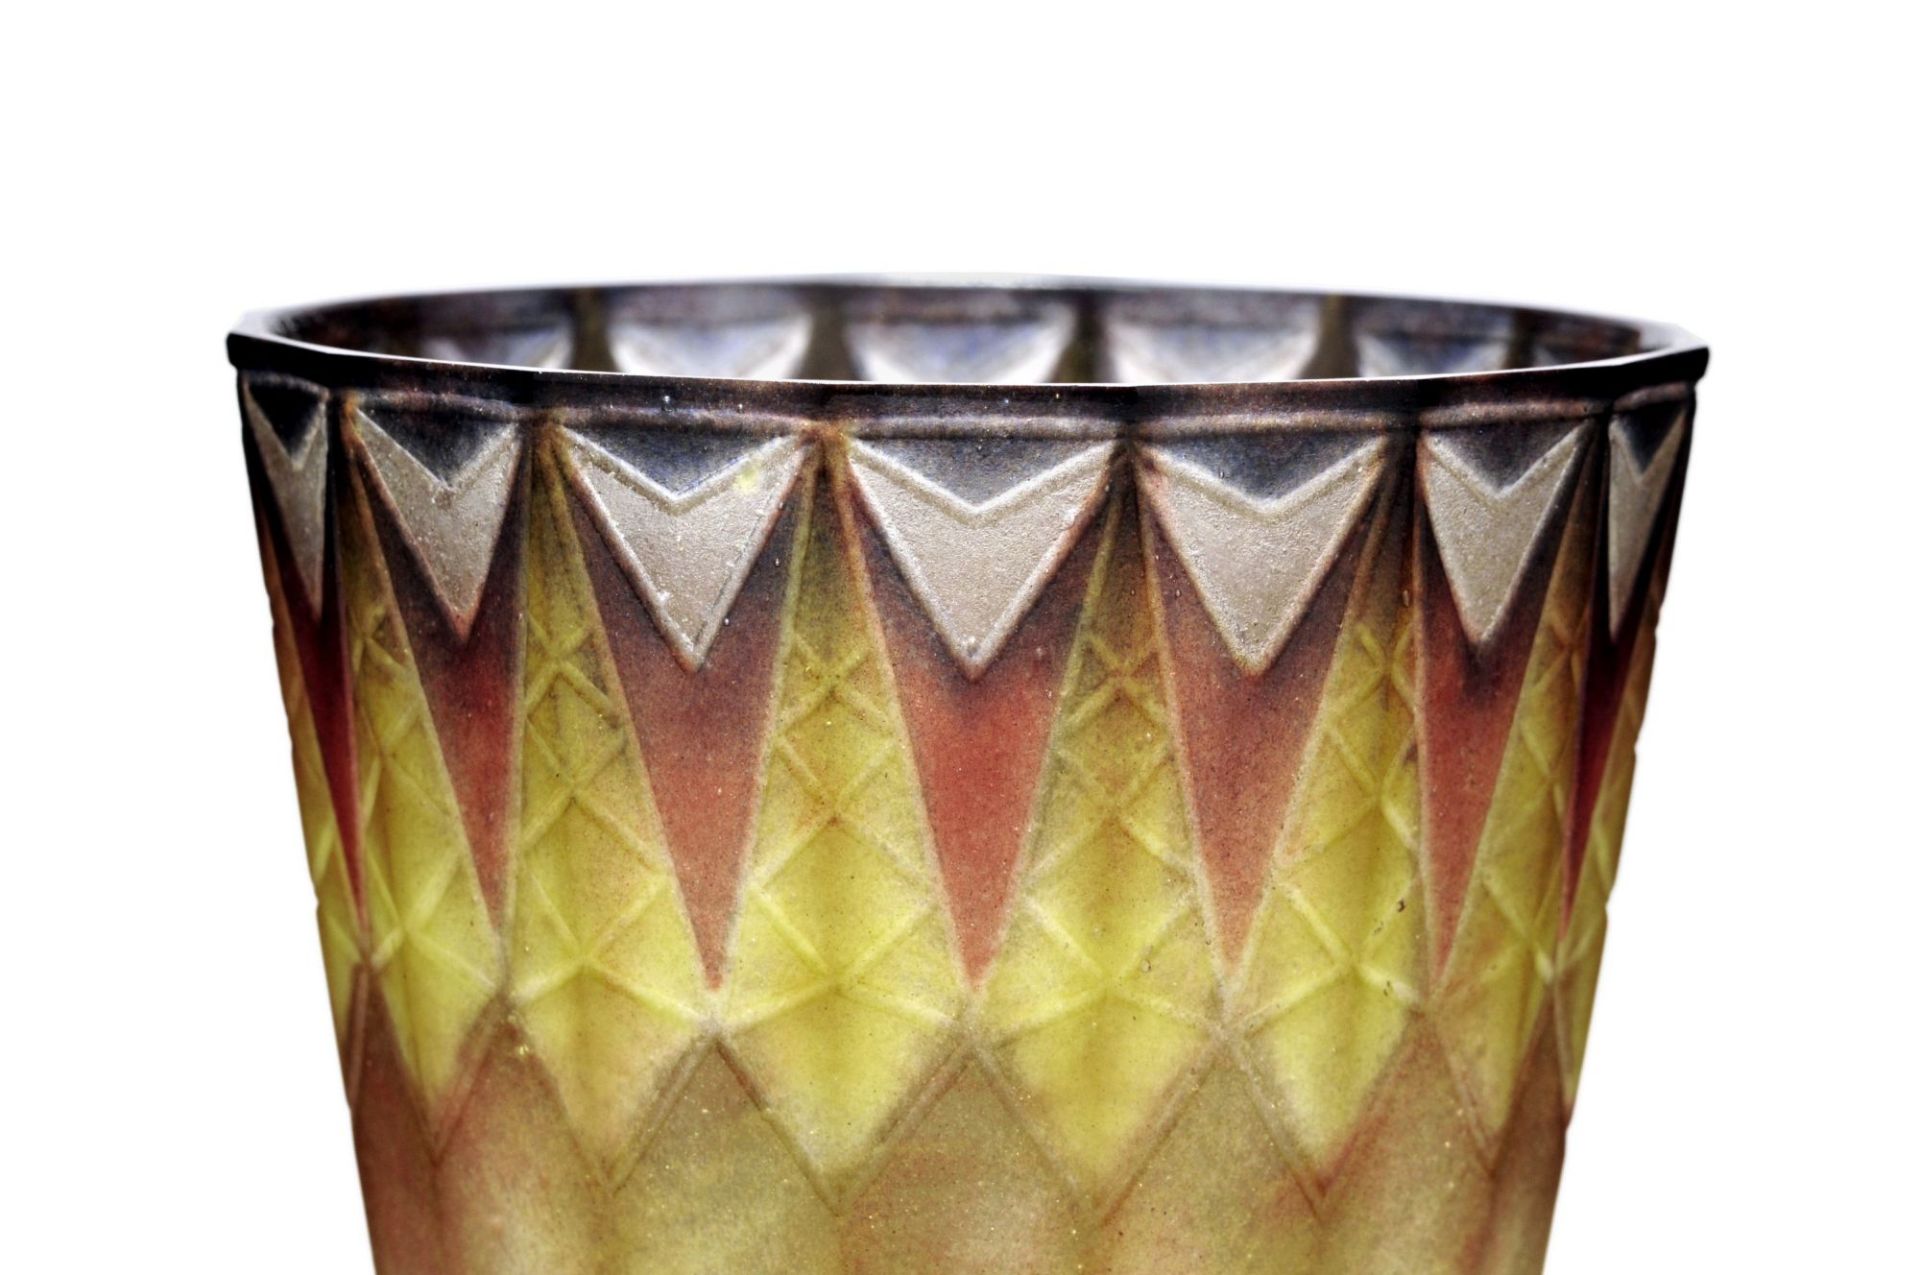 Seltene Bechervase "Vase à motifs de fers de lance gravés". Gabriel Argy-Rousseau, Paris, Frank - Image 4 of 7